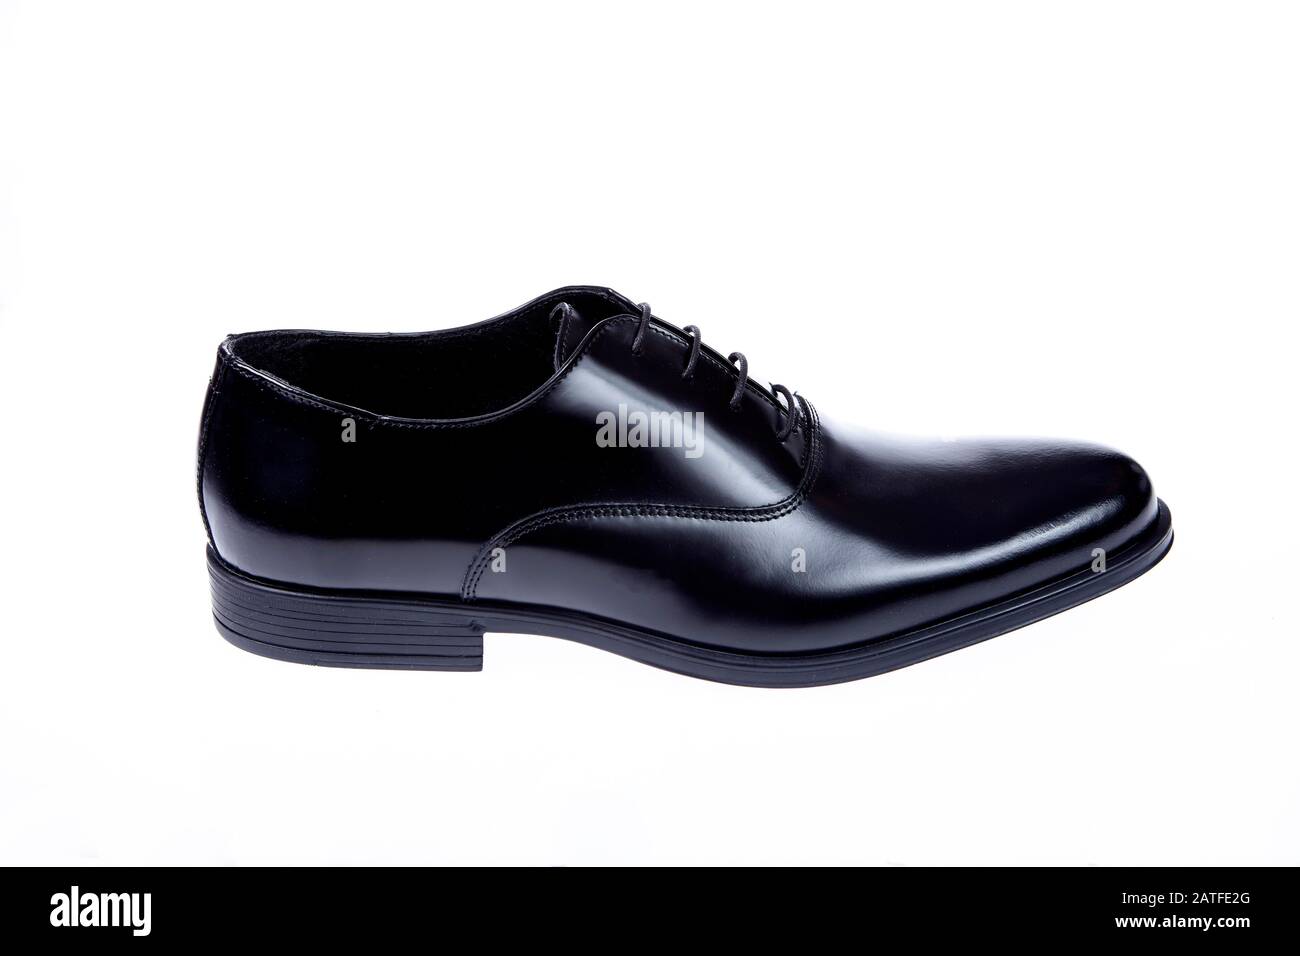 black shoe isolated on white background Stock Photo